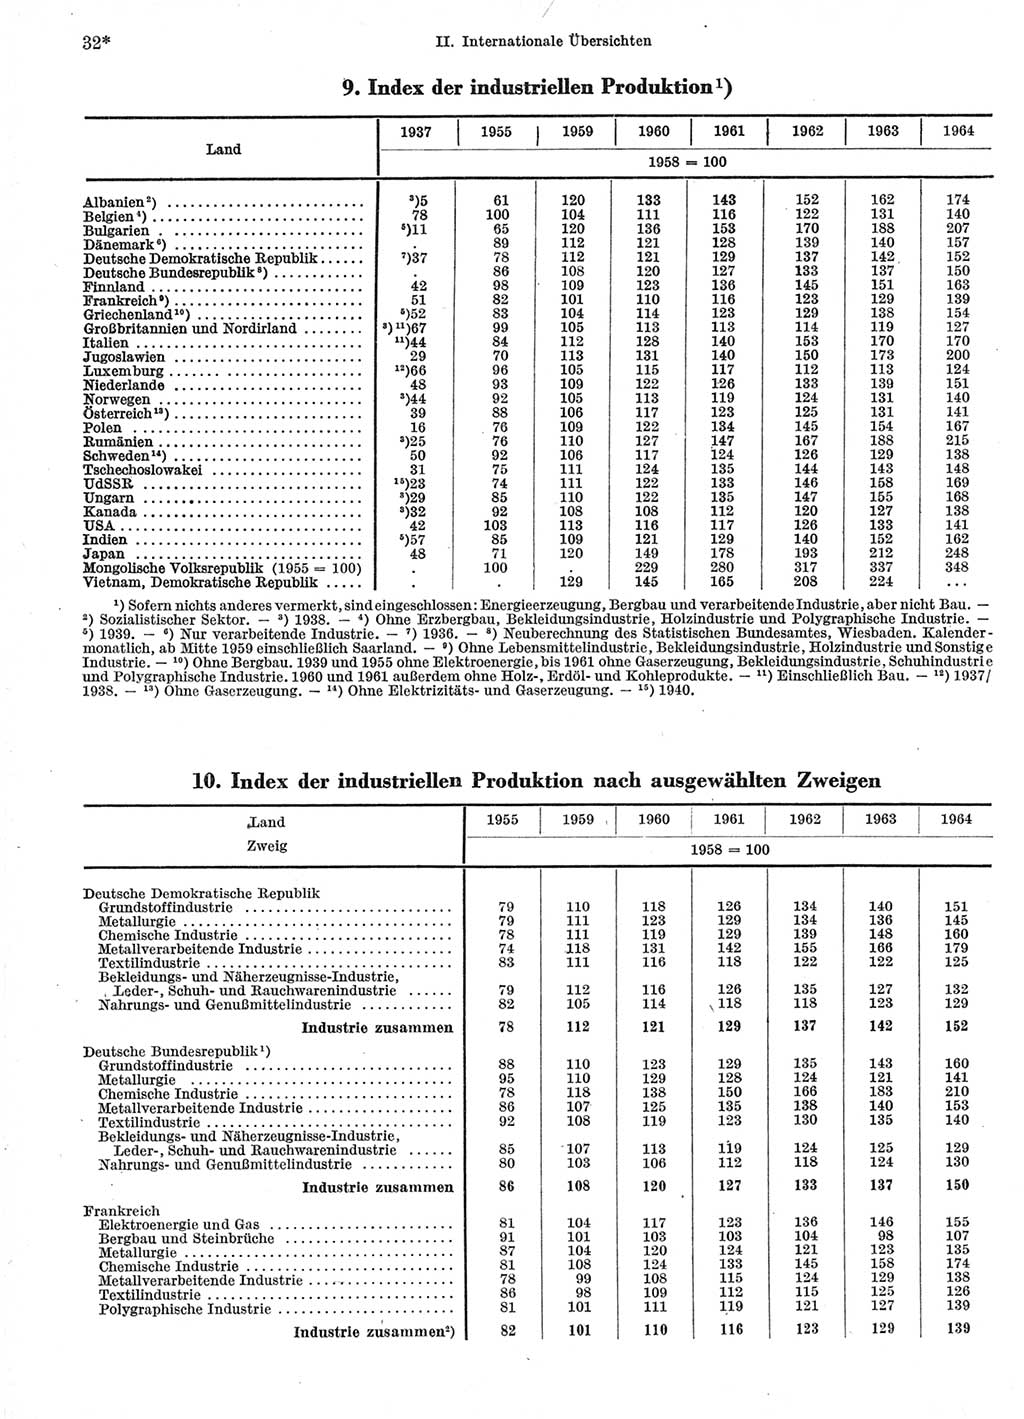 Statistisches Jahrbuch der Deutschen Demokratischen Republik (DDR) 1966, Seite 32 (Stat. Jb. DDR 1966, S. 32)